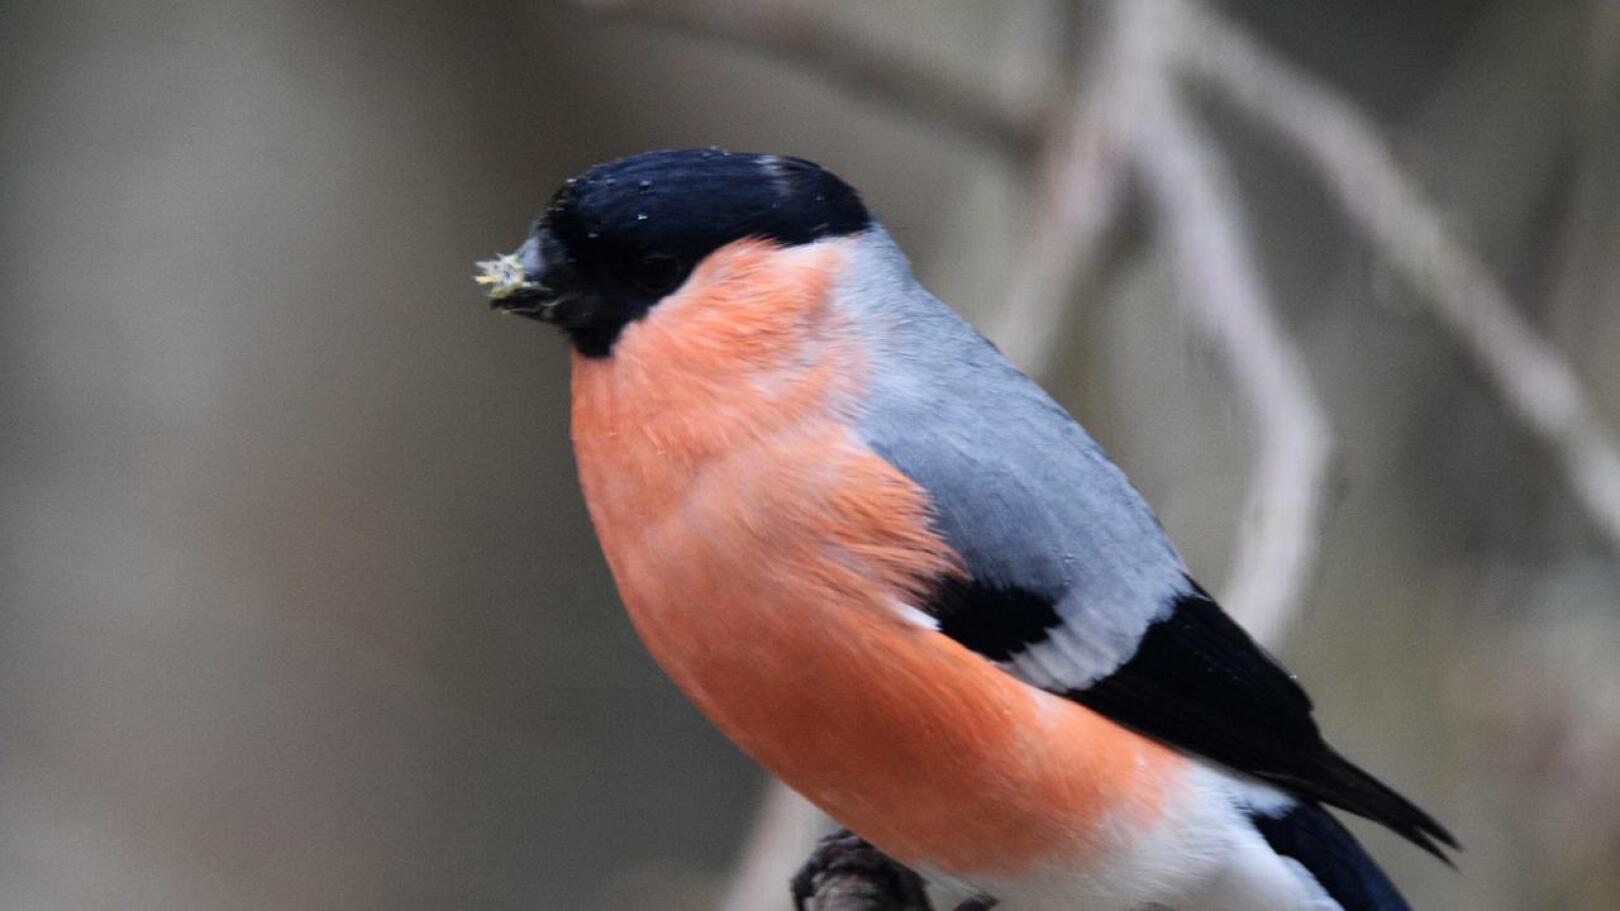 Monet lintulajit varastoivat talveksi ruokavarastoja ja niiden paino nousee talvella suuremmaksi kuin kesällä. Toiset lajit myös tankkaavat ravintoa syksyllä ja tämä nostattaa lintujen painoa. Paino on talvella noin 10-20 prosenttia kesää korkeampi.